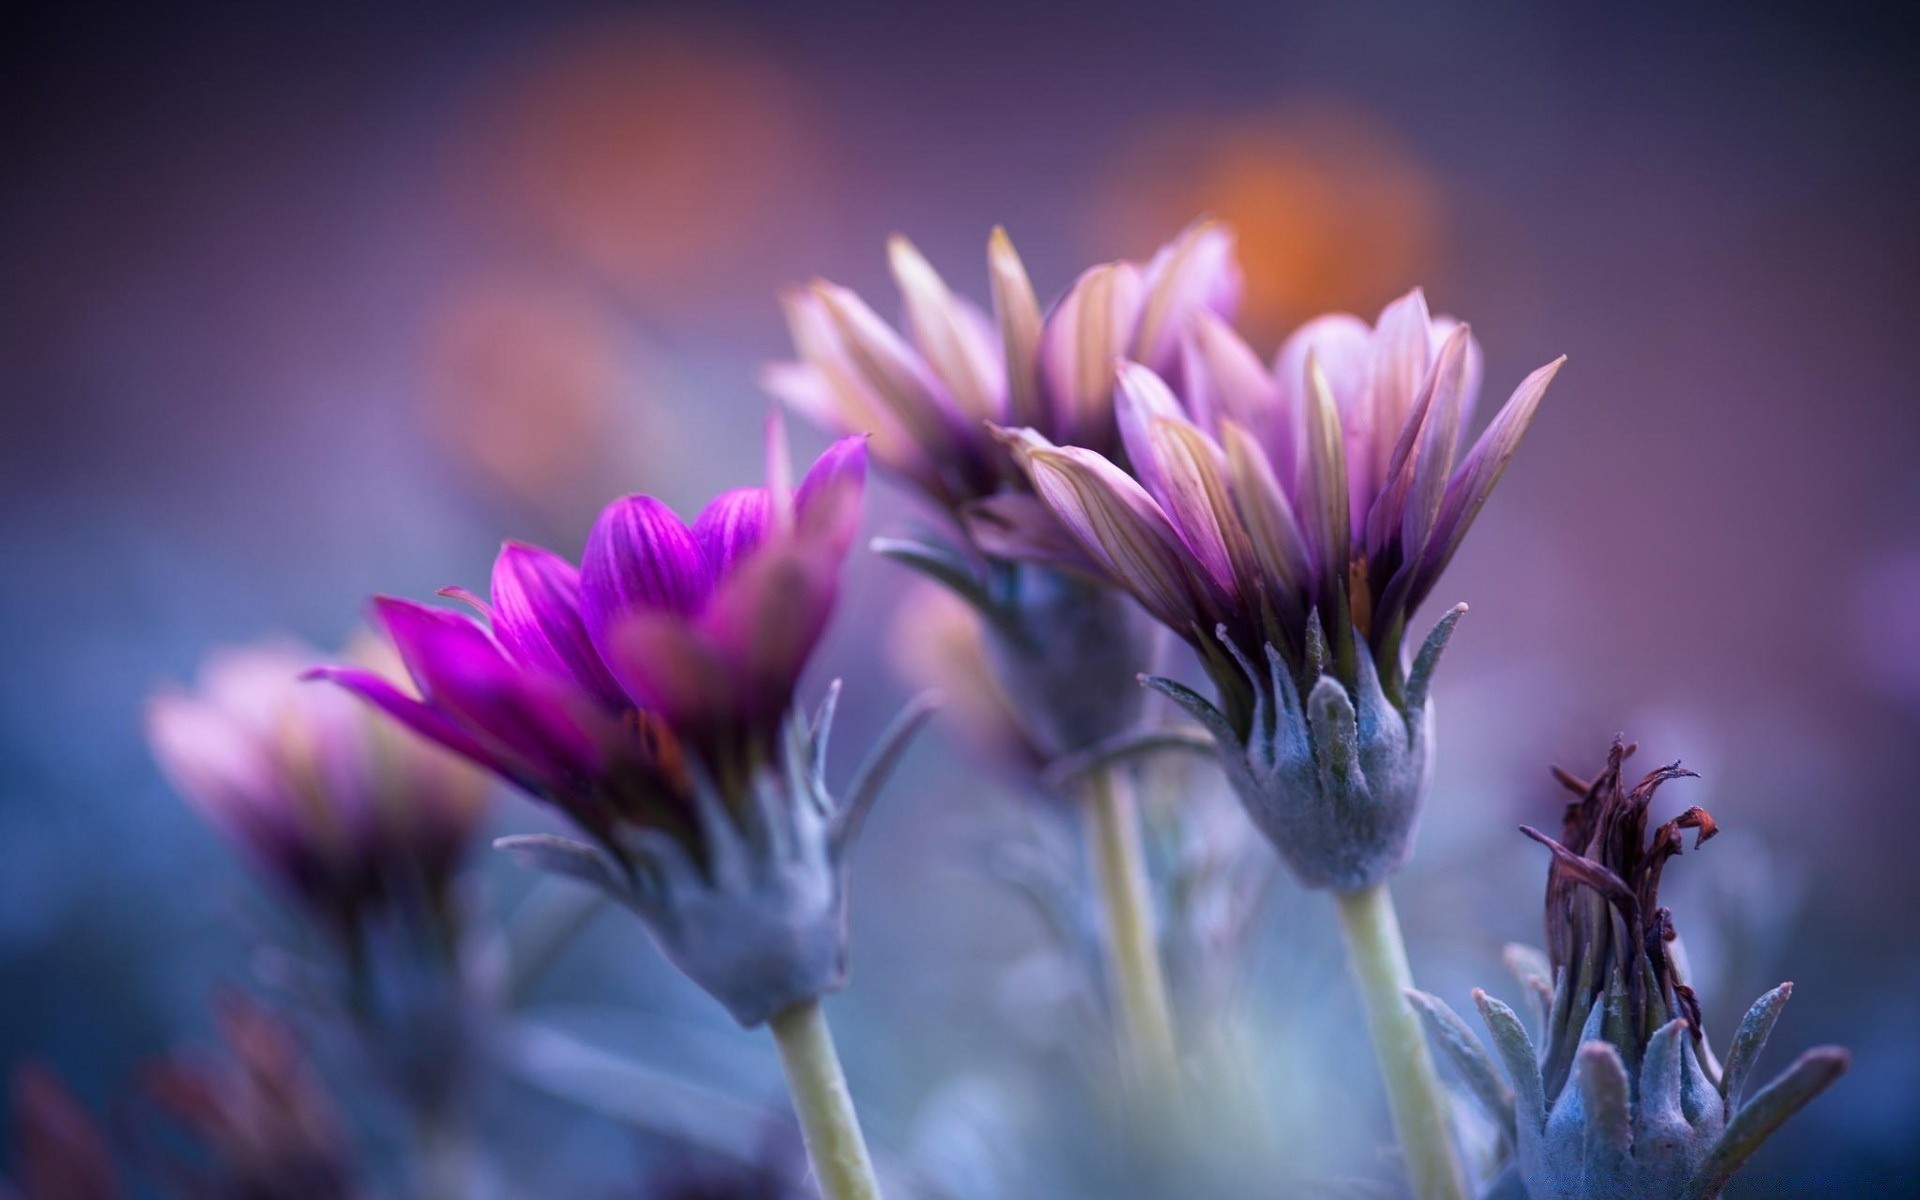 макросъемка цветок природа флора лето сад лист доф цвет вайолет лепесток поле фиолетовый яркий цветочные блюминг на открытом воздухе флорес крупным планом